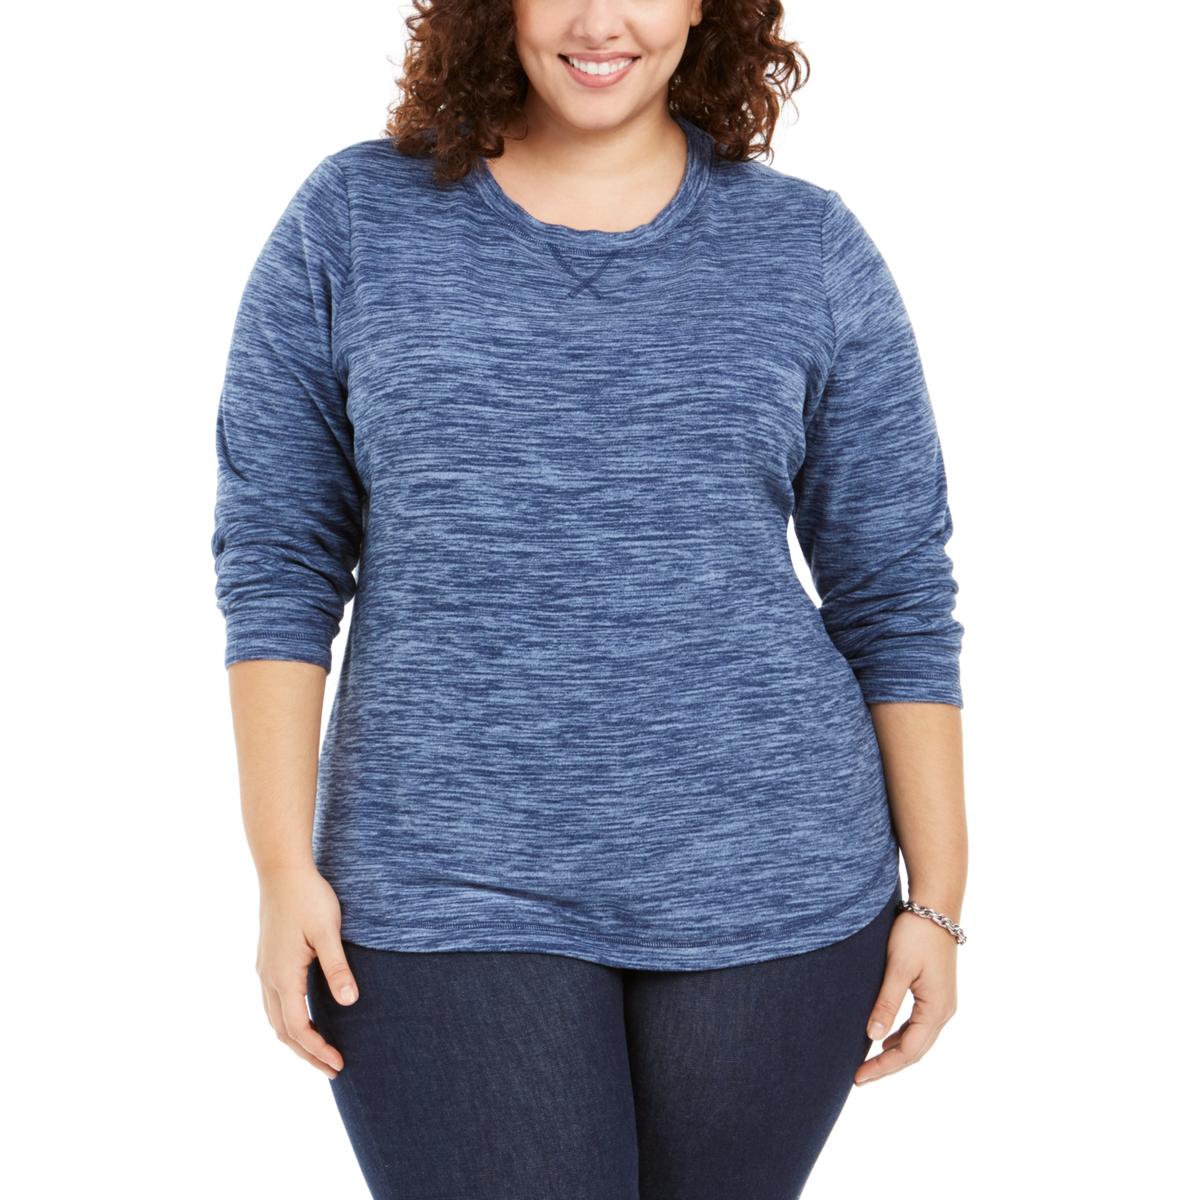 Karen Scott Sport Womens Blue Comfy Shirts & Tops Loungewear Plus 0X ...